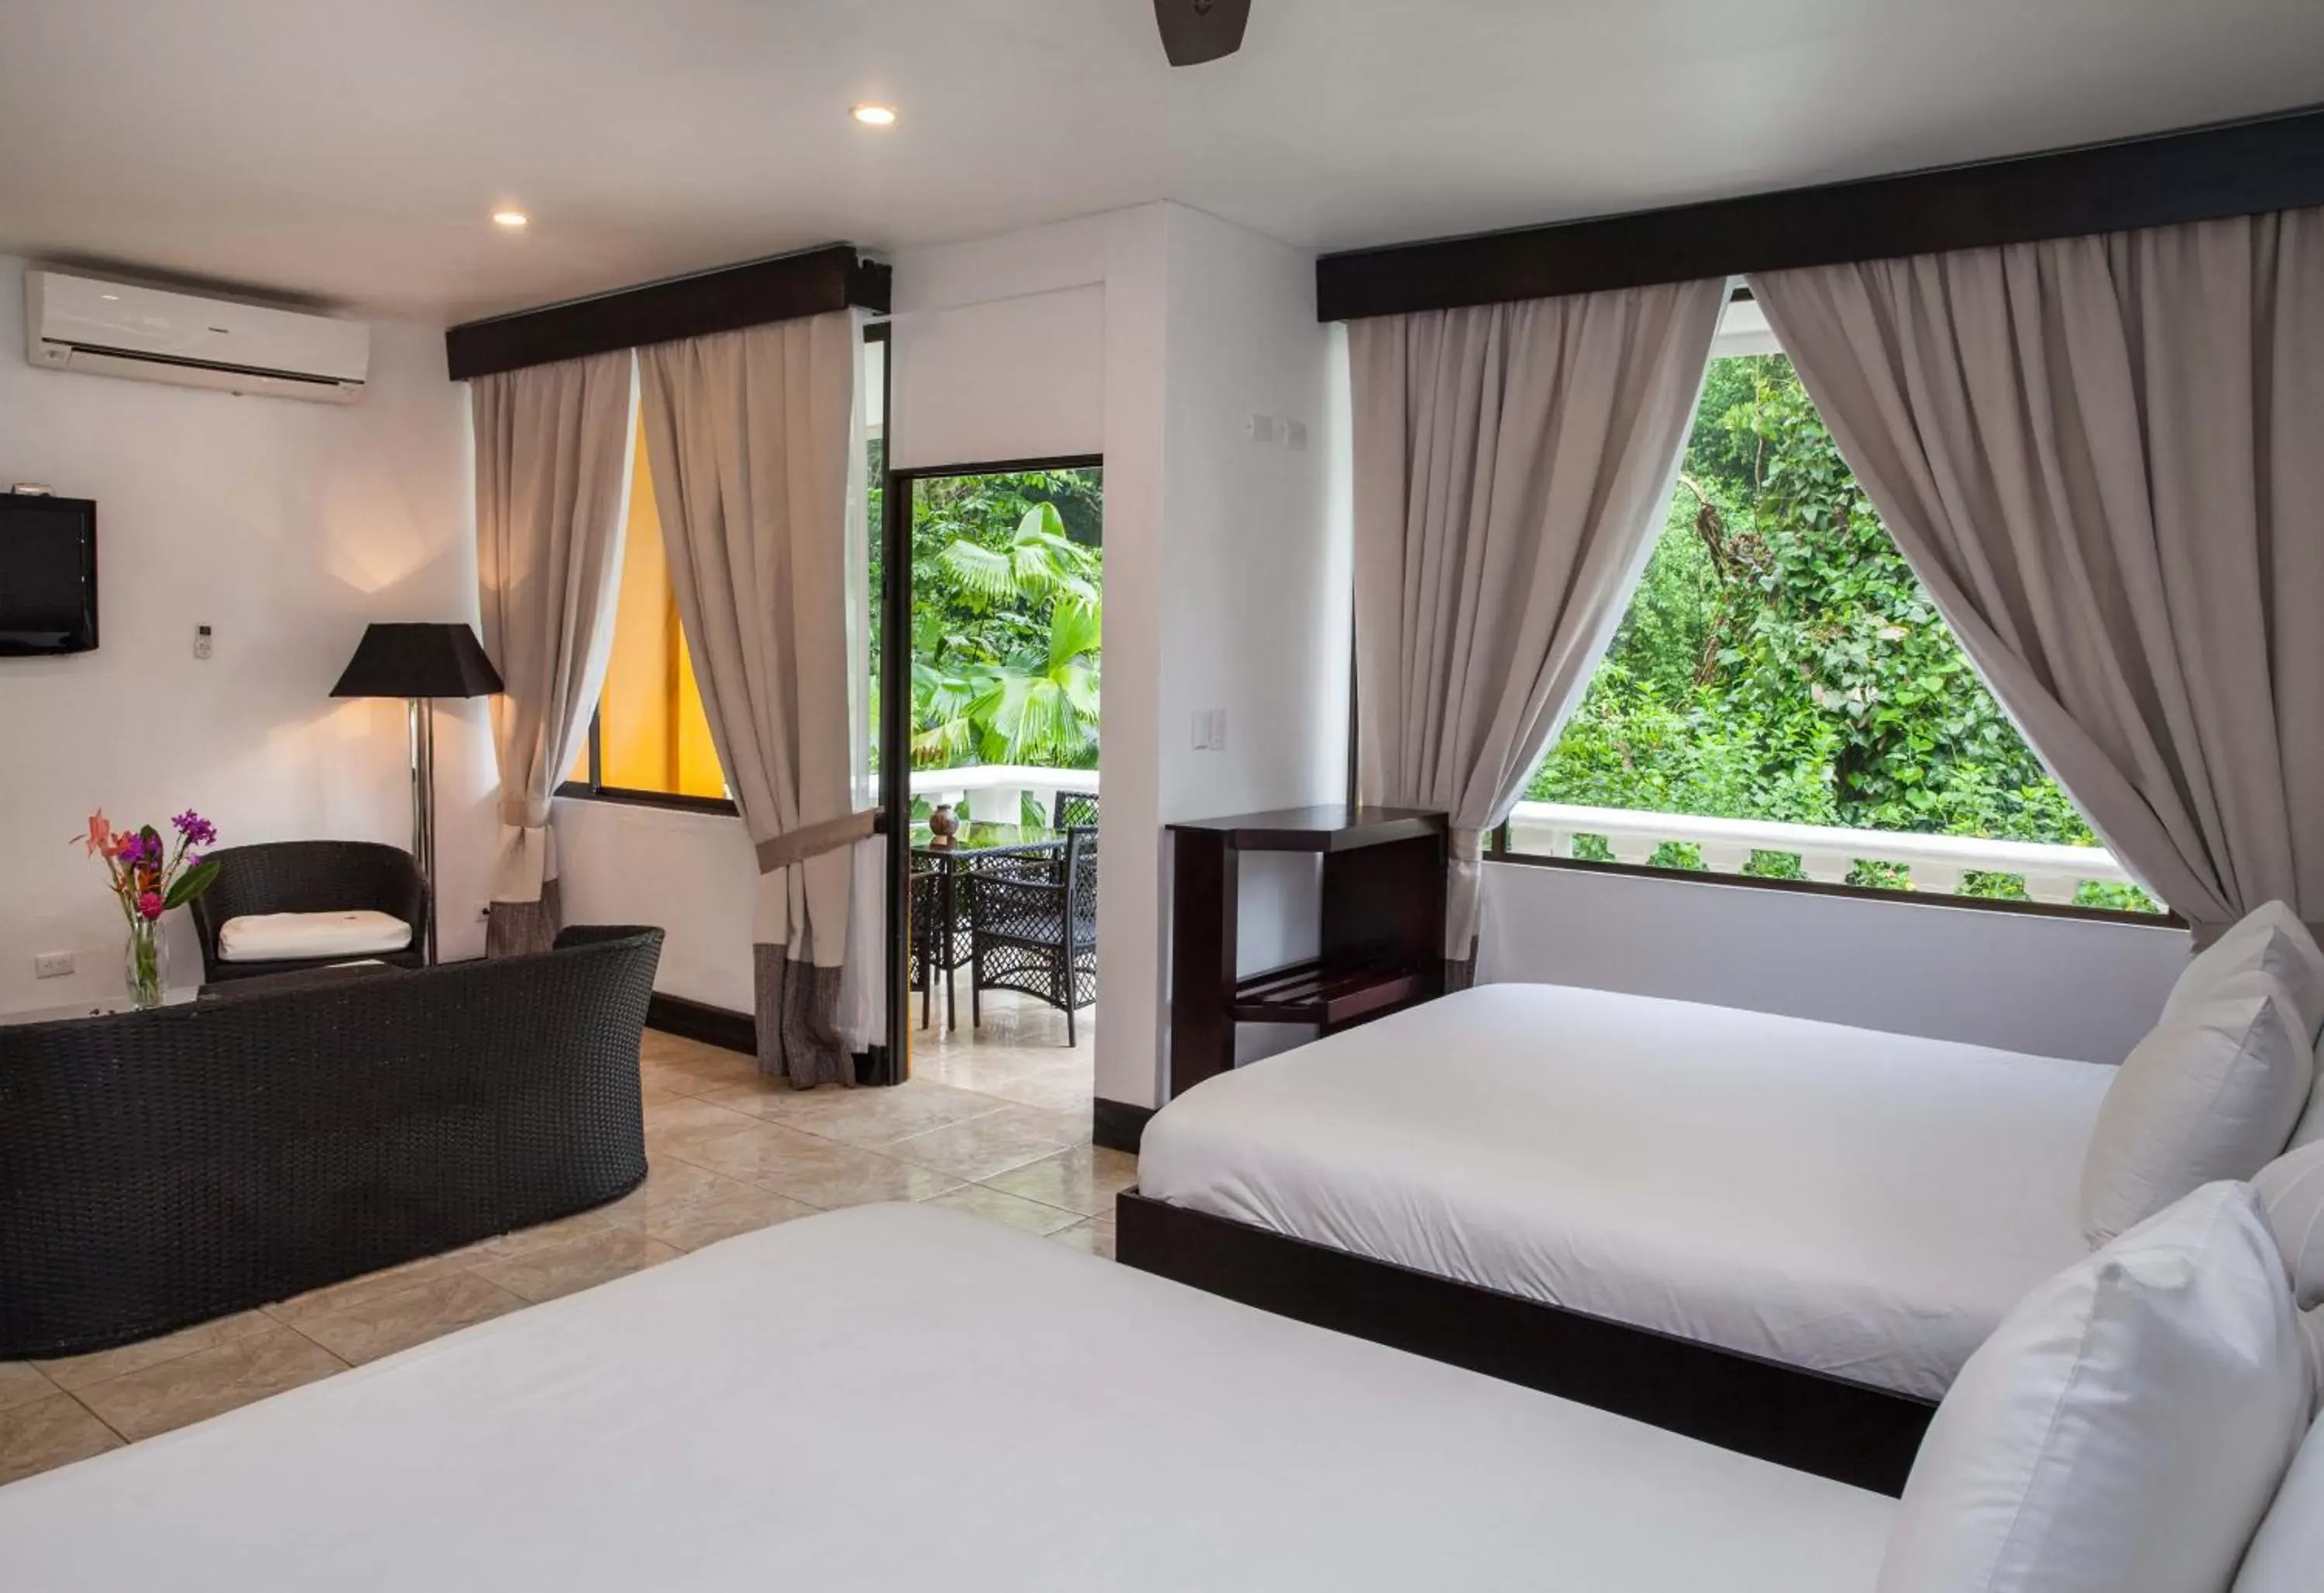 Bedroom, Bed in Tifakara Boutique Hotel & Birding Oasis